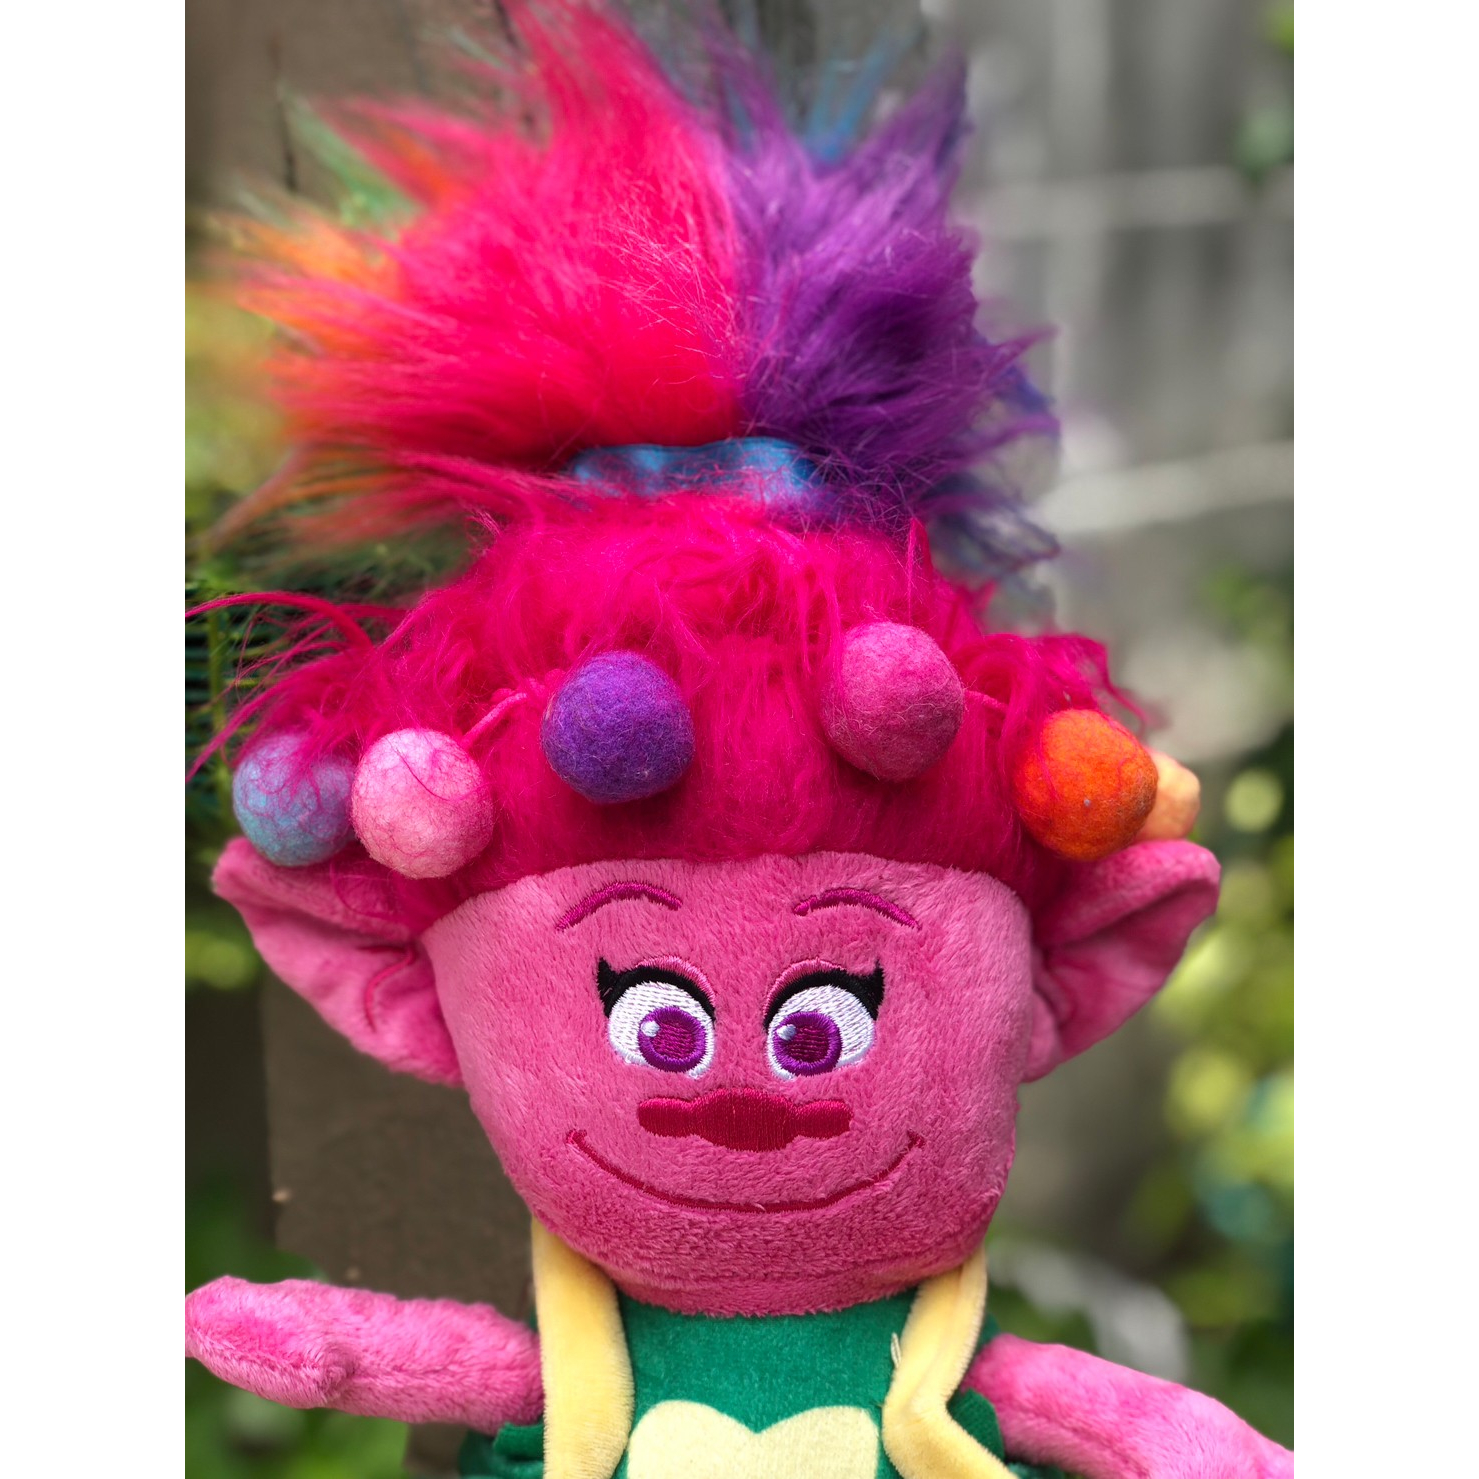 ตุ๊กตาโทรล ปับปี้ Poppy Trolls World Tour Plush Soft Doll Toy 2020 Dreamworks